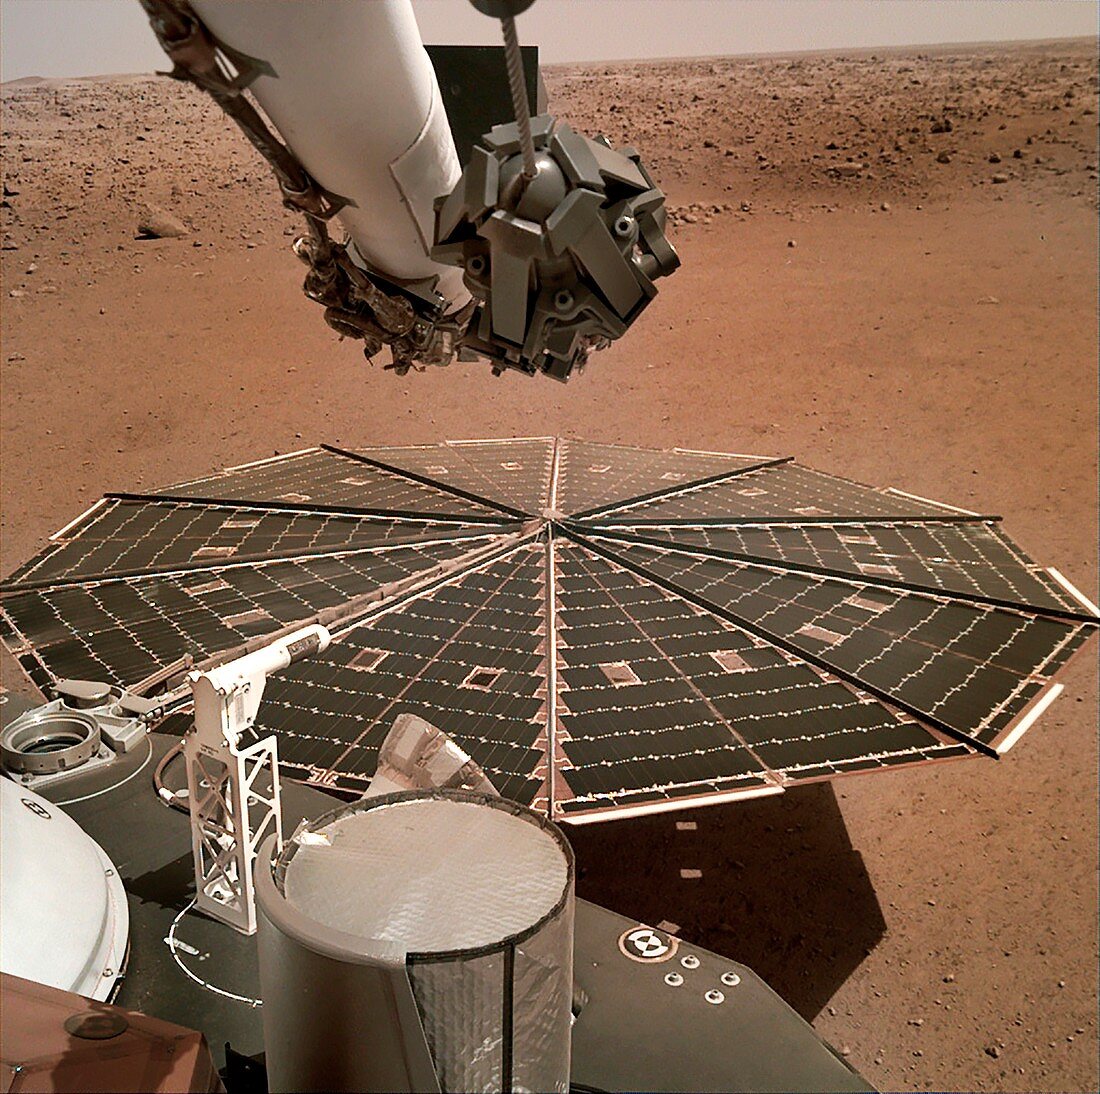 InSight lander on Mars, solar panel deployed